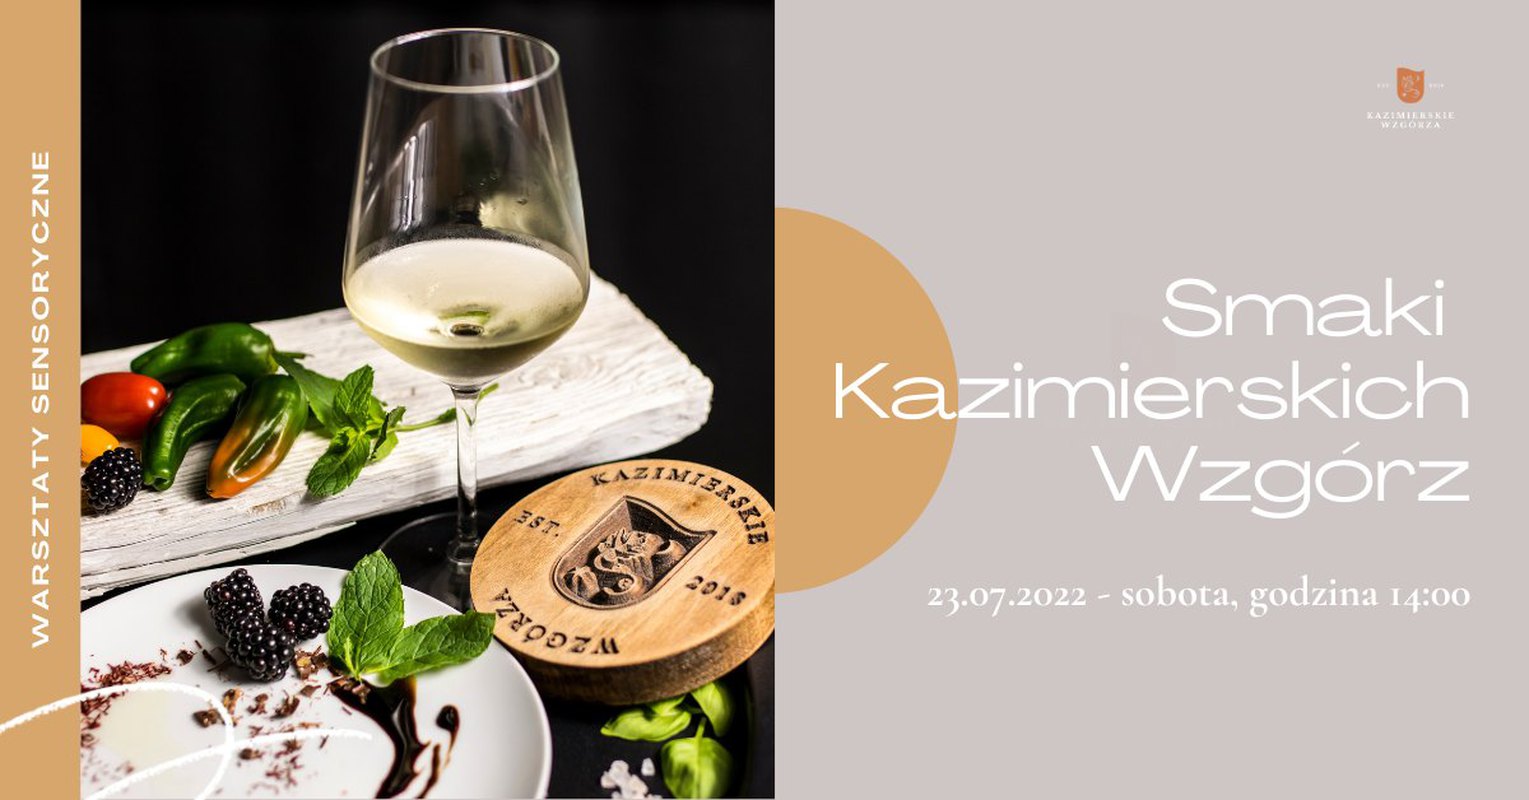 Smaki Kazimierskich Wzgórz - warsztaty sensoryczne - Zamieszanie w kieliszku, czyli chemia wina.